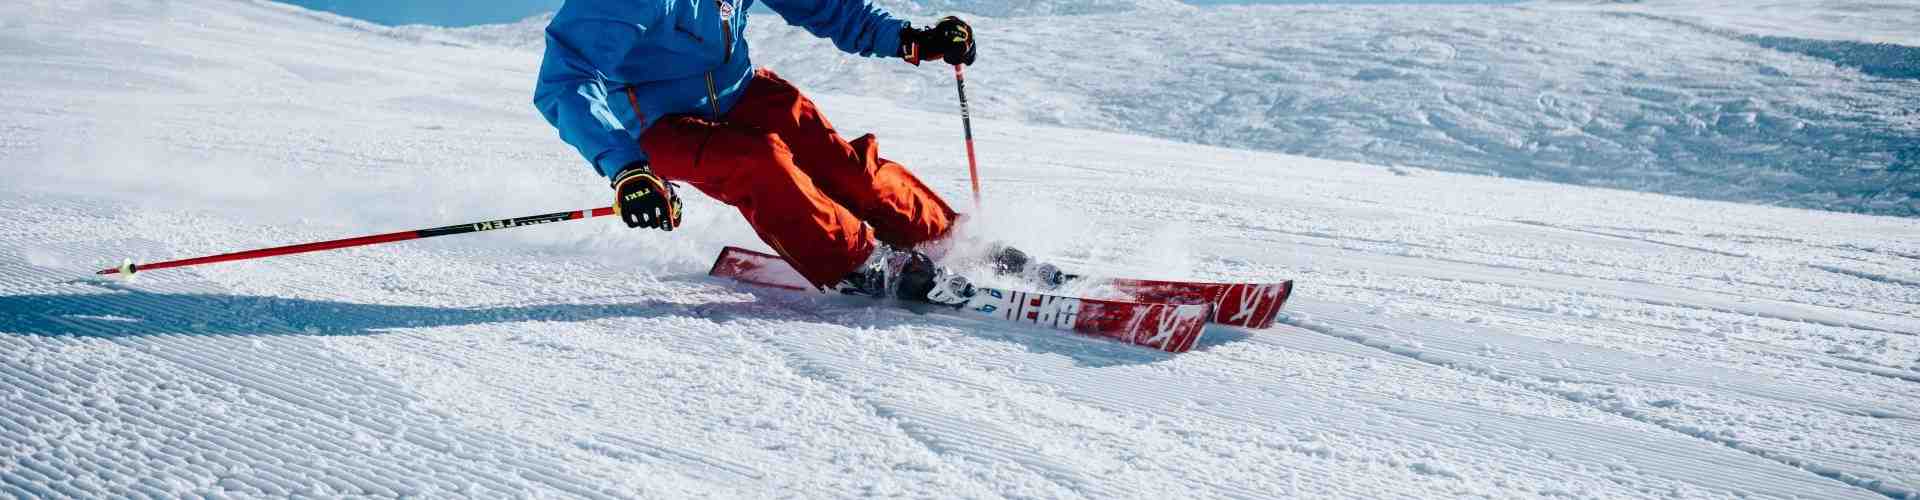 Comment skier pas cher?